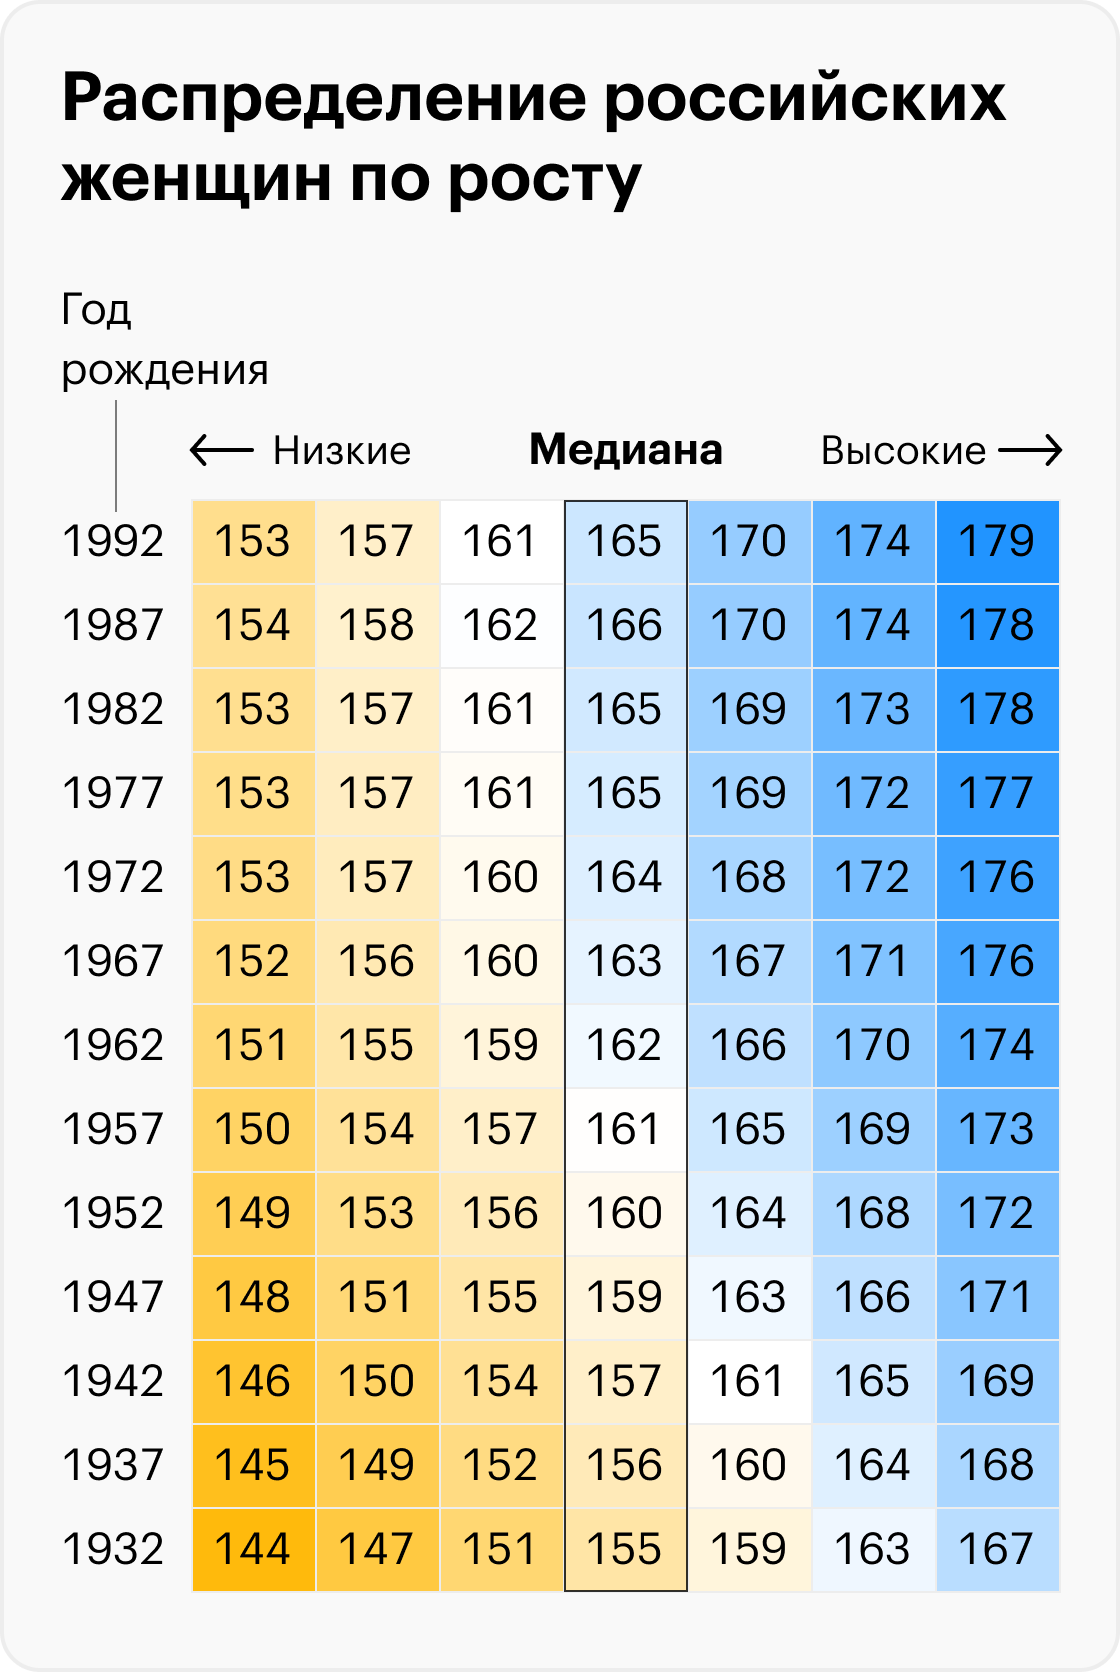 Источник: Биоимпедансное исследование состава тела населения России, 2014